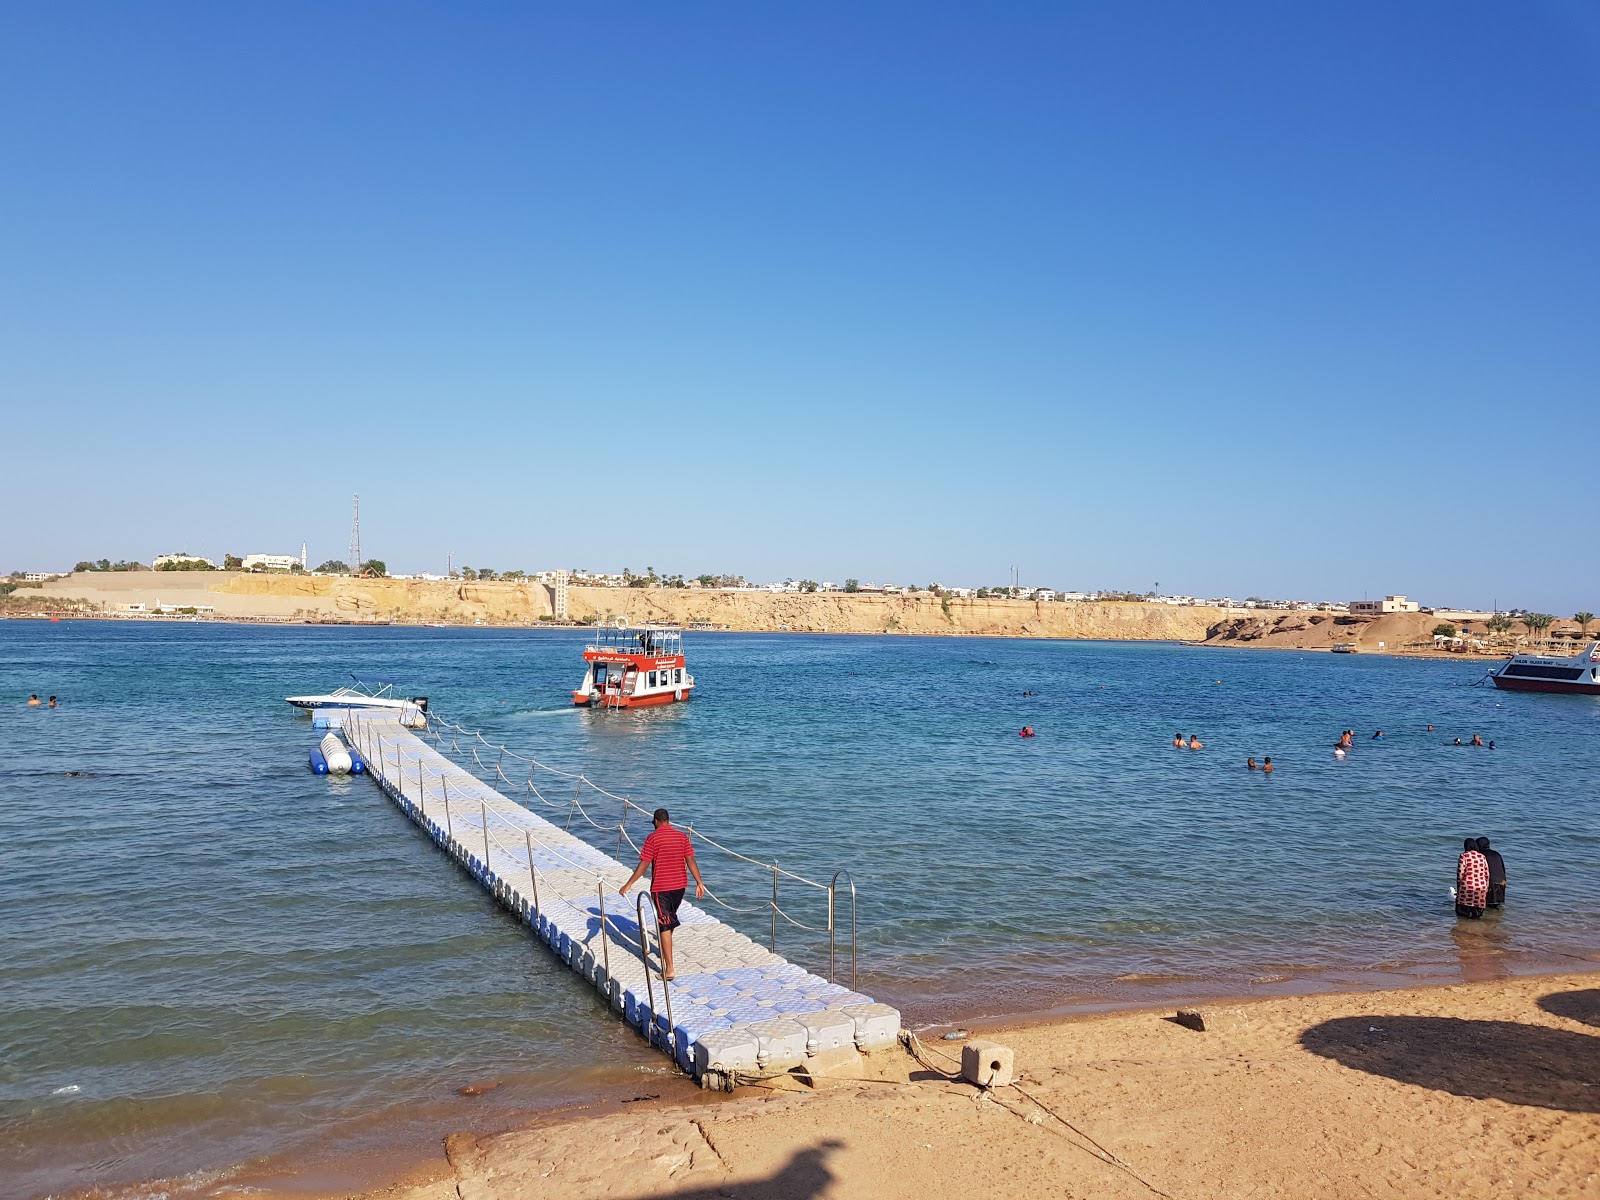 Fotografie cu Hala beach - locul popular printre cunoscătorii de relaxare